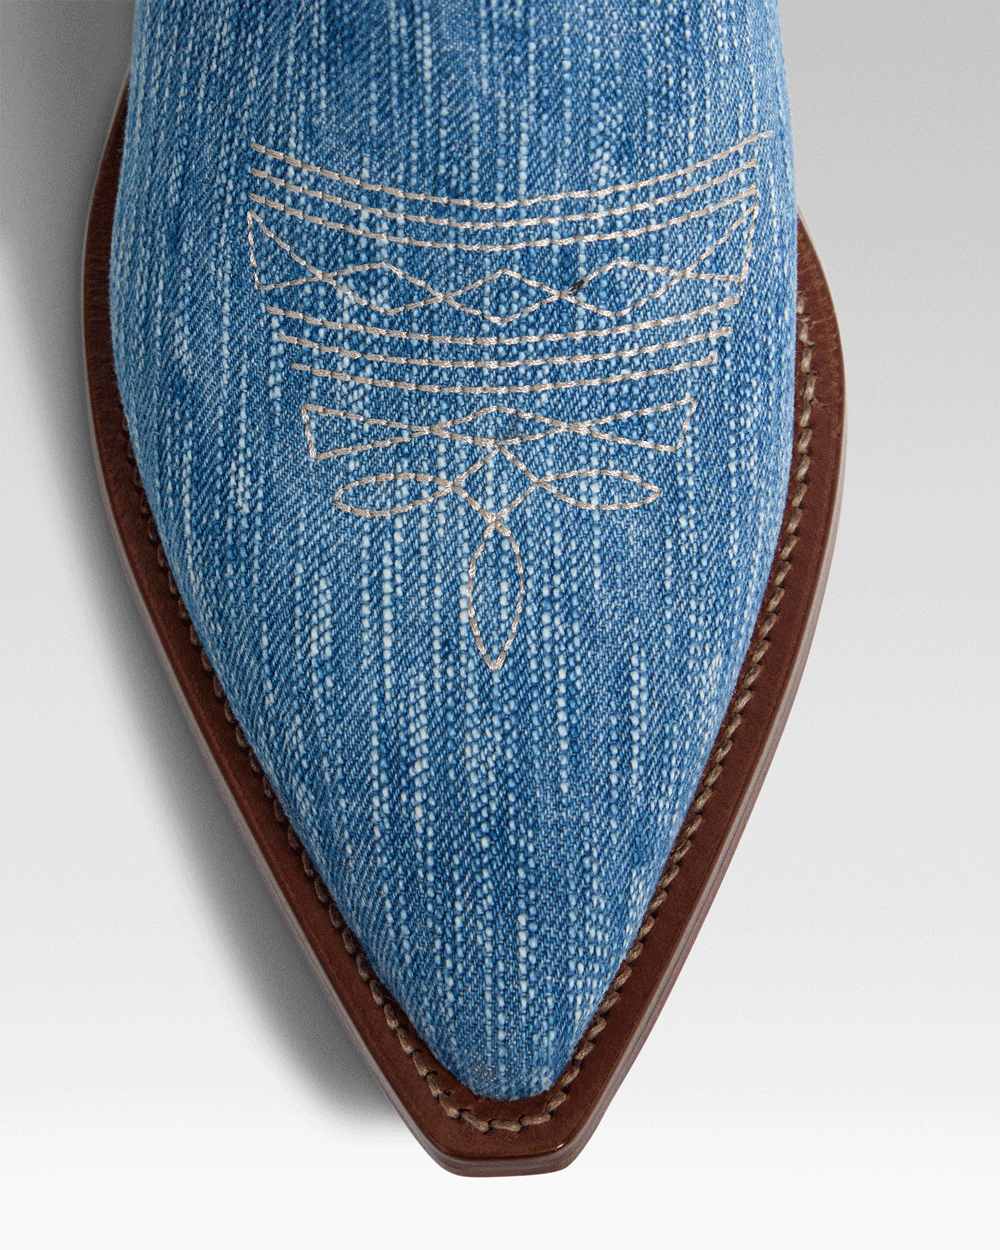 SANTA FE Women's Cowboy Boots in Light Blue Jeans | Ecru Embroidery